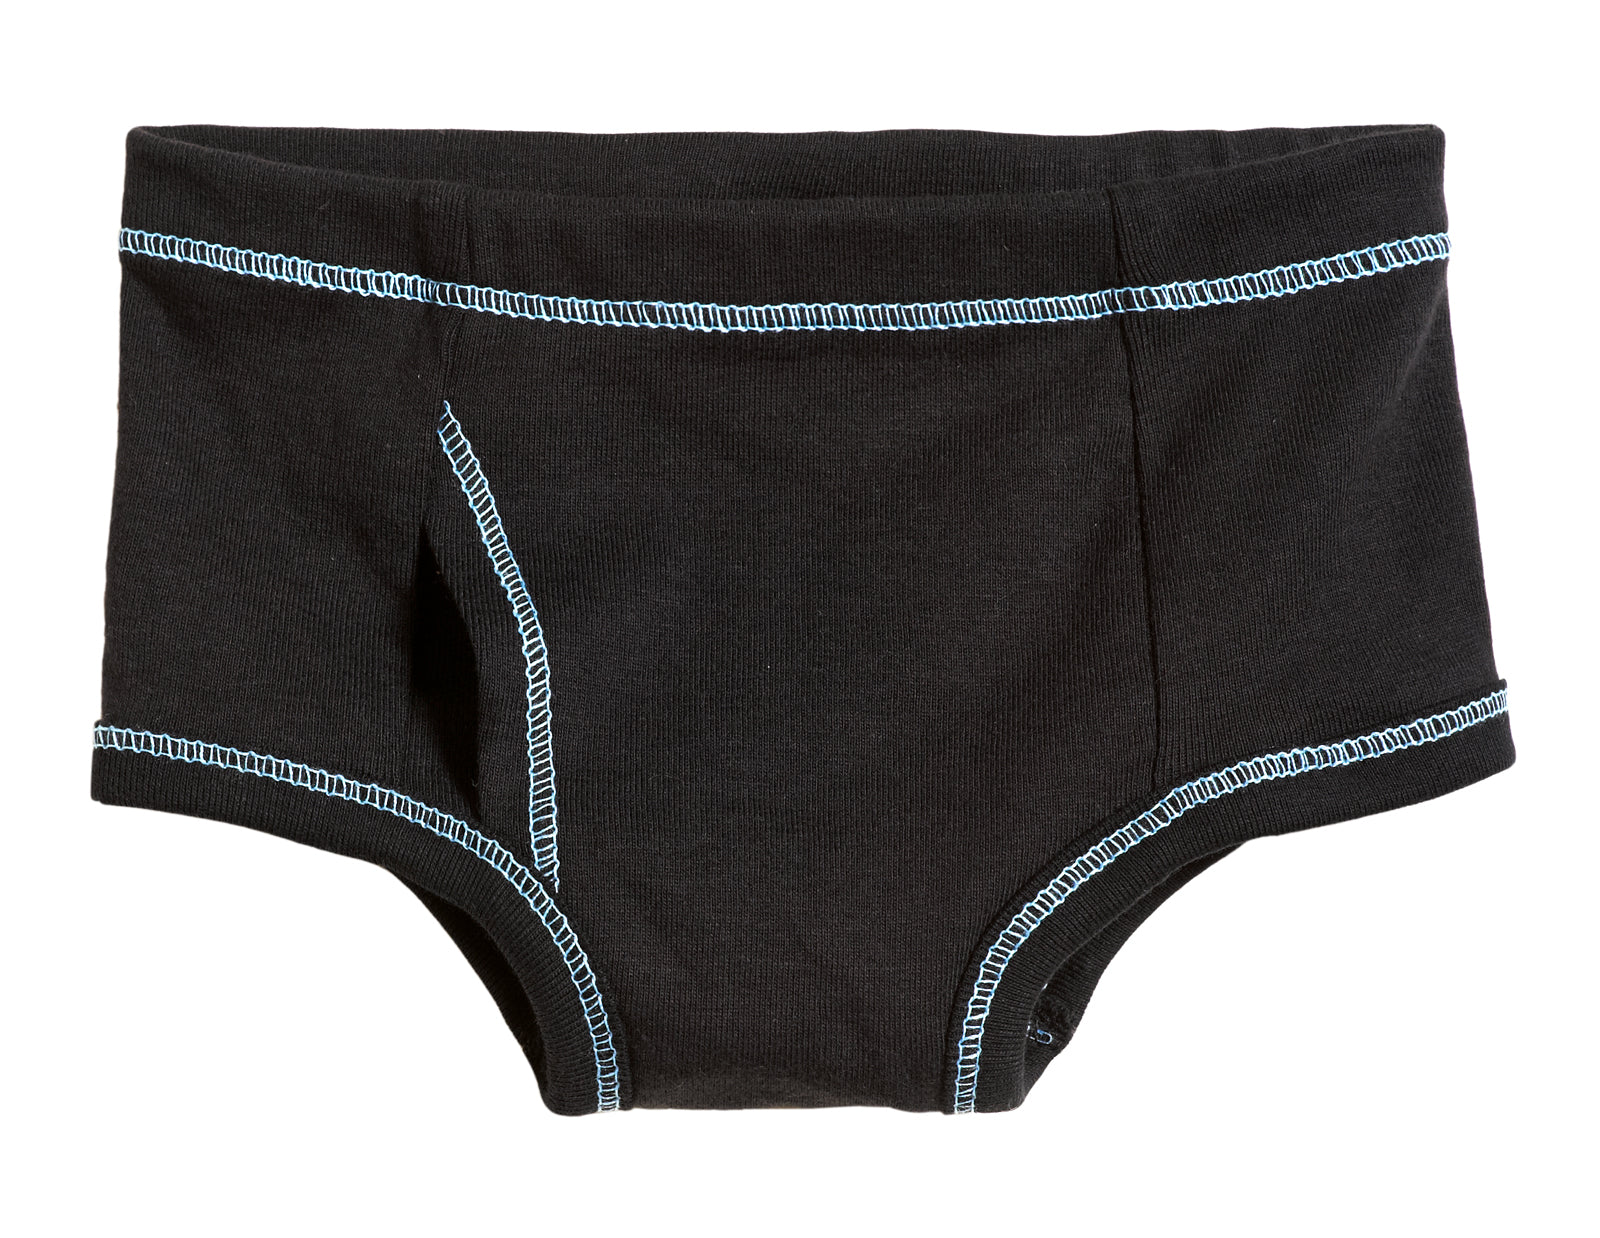 Underwear For Men, Black Briefs